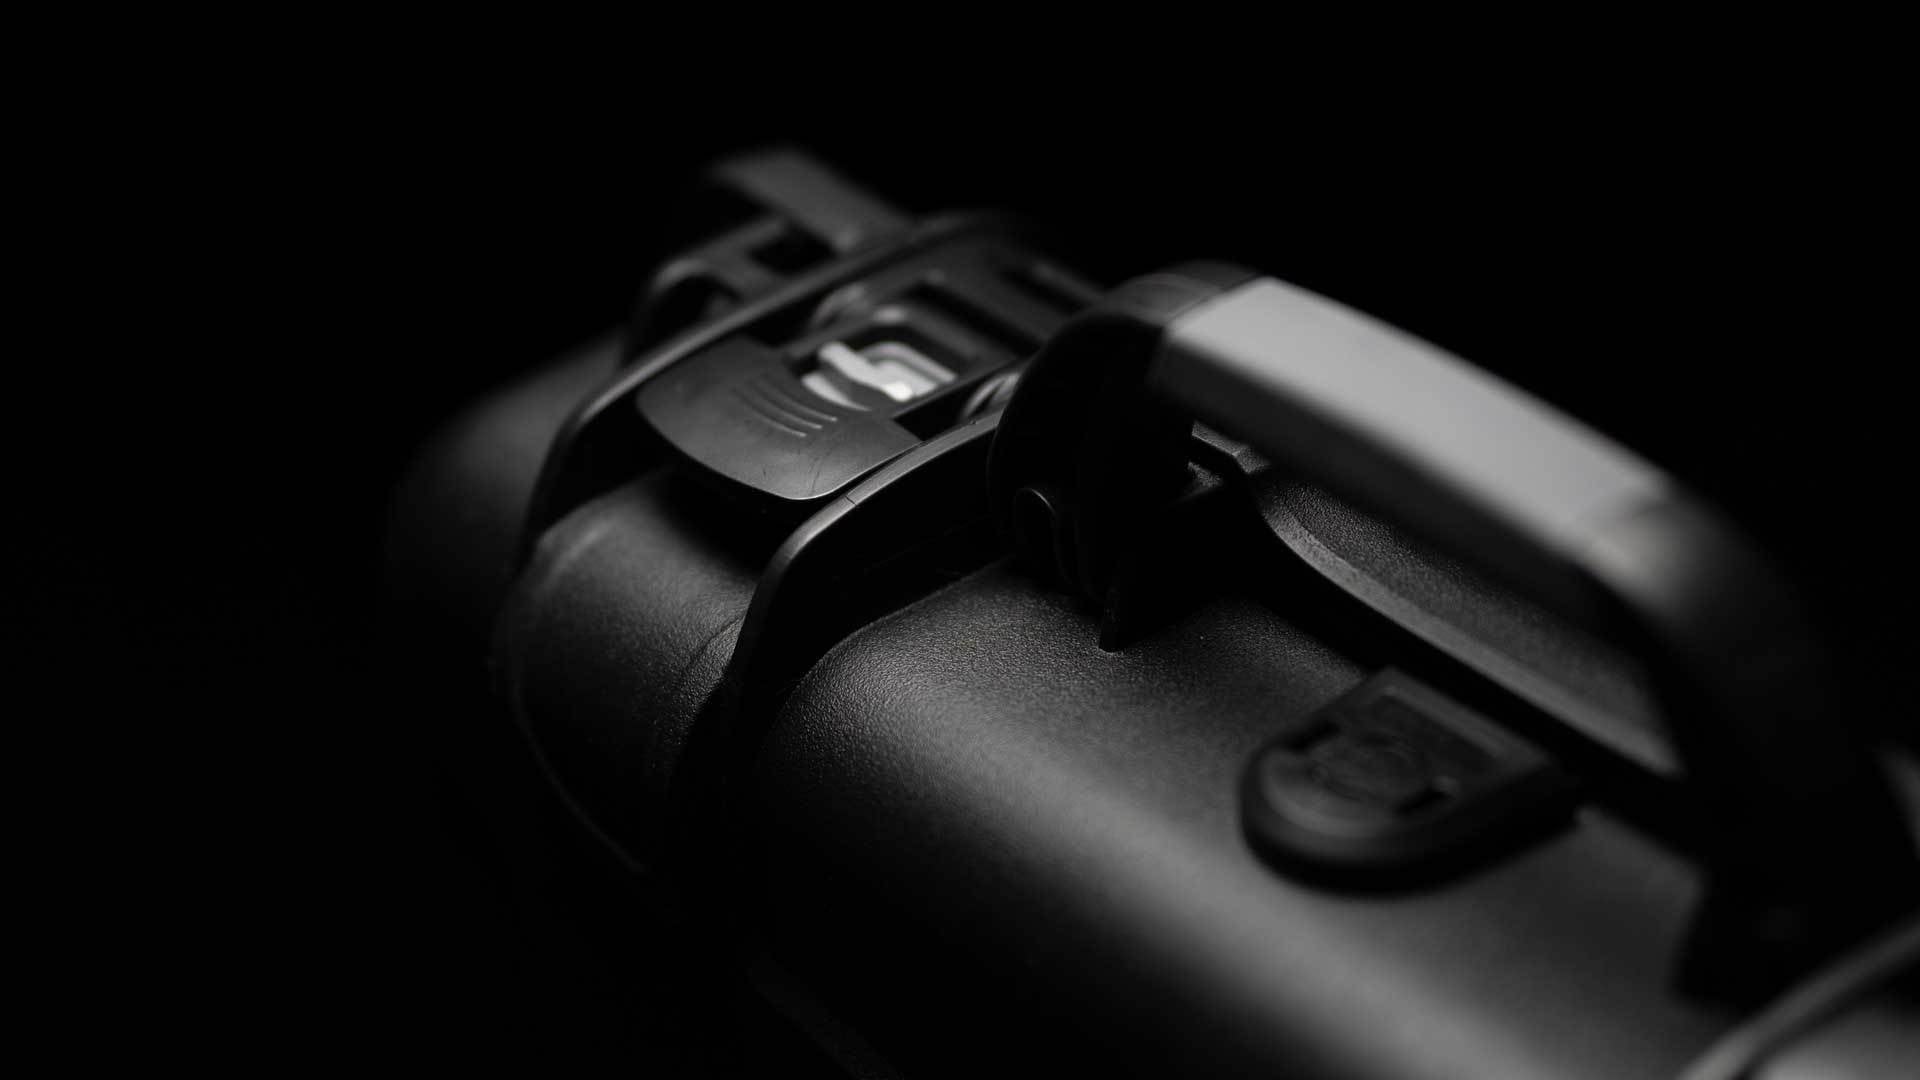 Pistole koffers | NANUK Wasserdicht, staubdicht, unverwüstlich und lebenslange Garantie